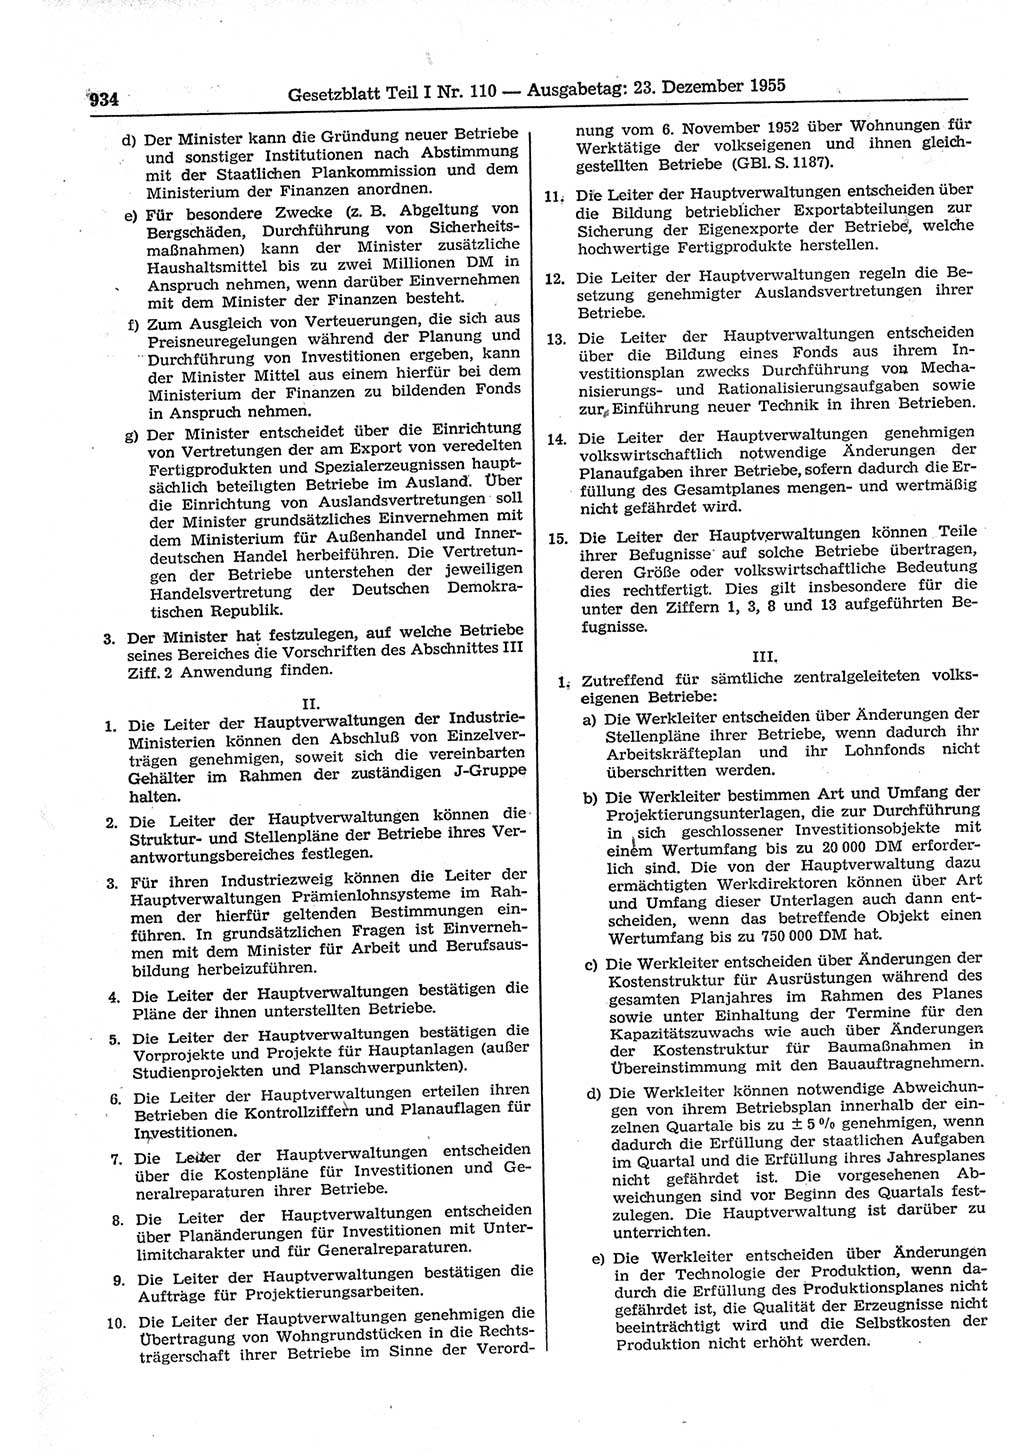 Gesetzblatt (GBl.) der Deutschen Demokratischen Republik (DDR) Teil Ⅰ 1955, Seite 934 (GBl. DDR Ⅰ 1955, S. 934)